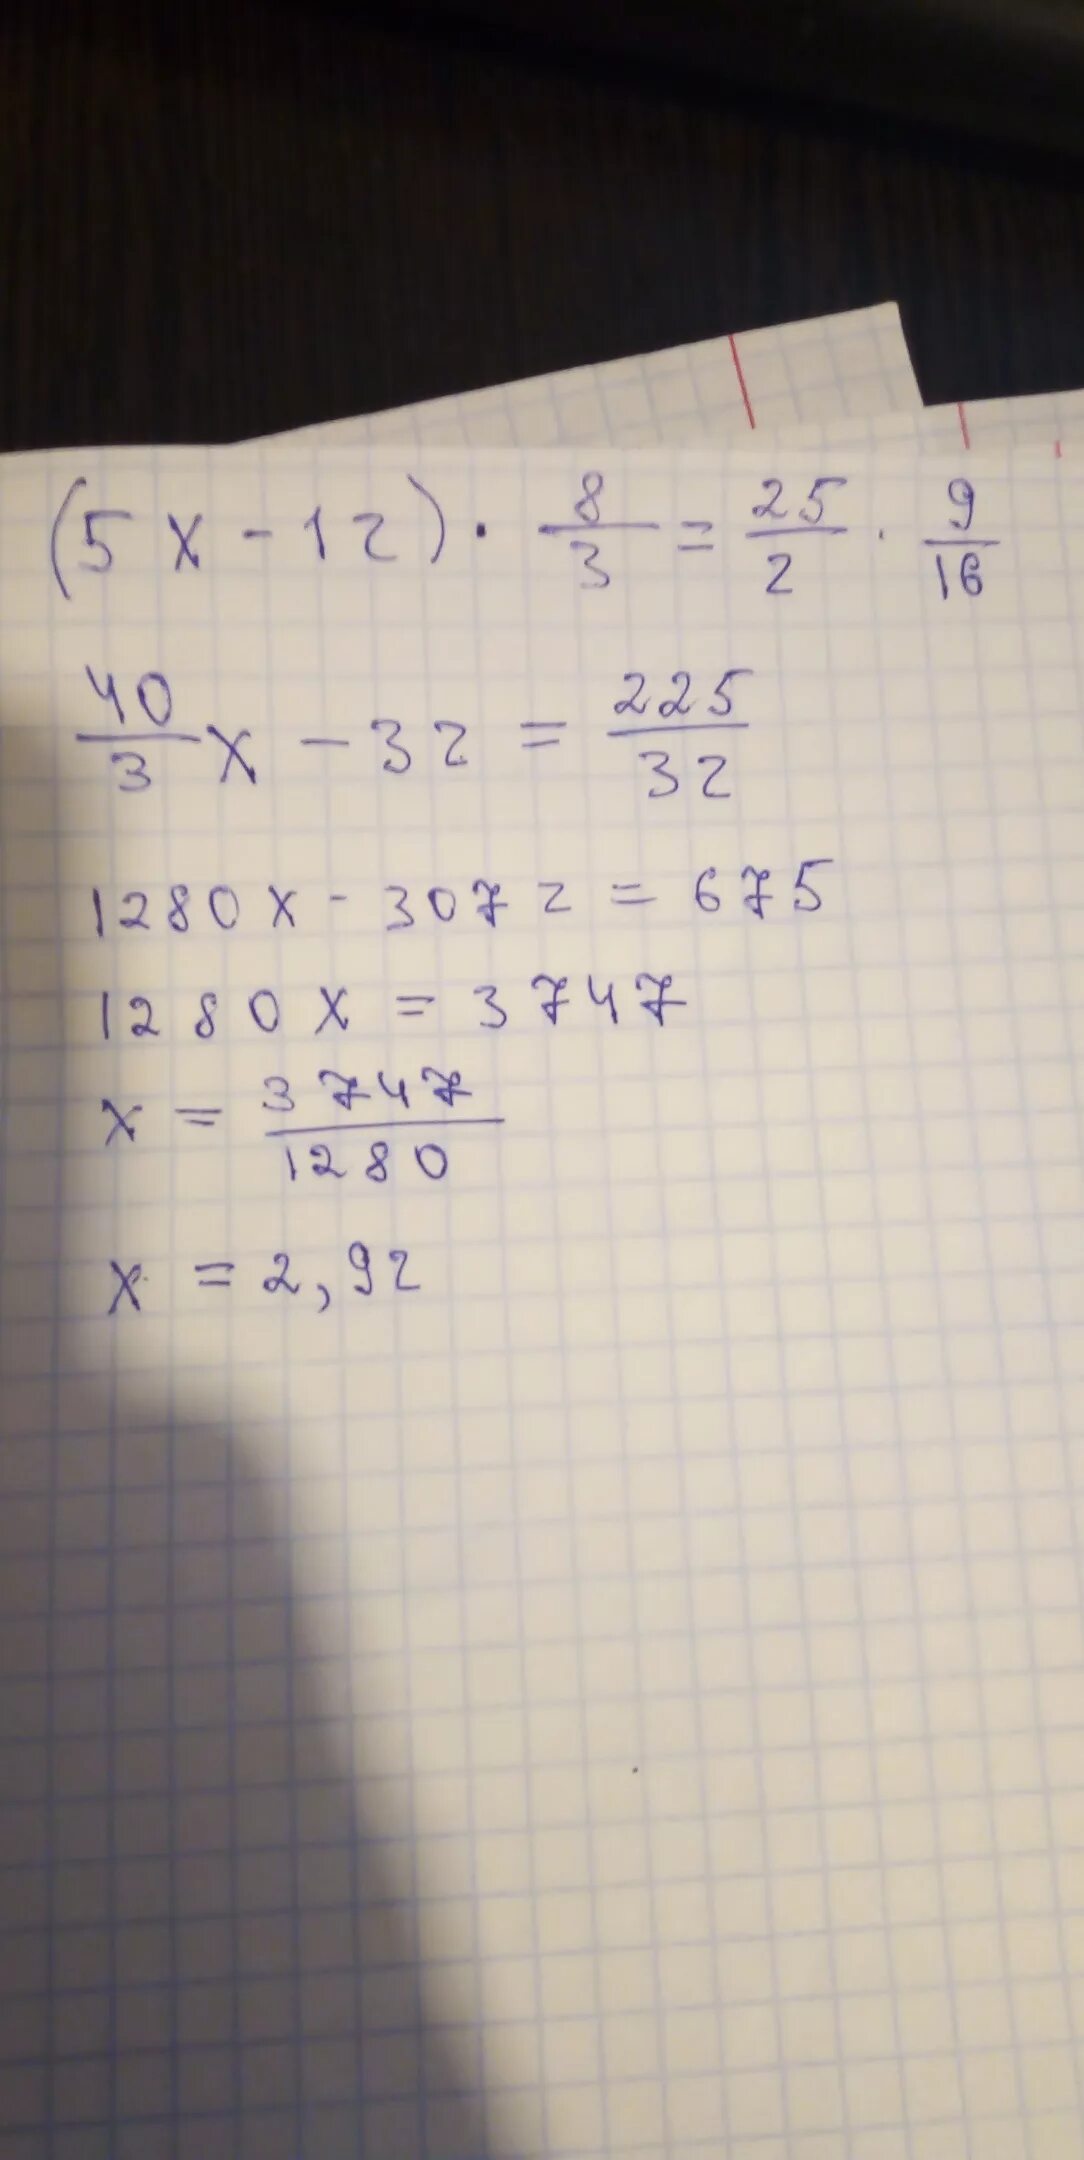 12/Х+5 -12/5. 8 9 16. (Х+3,16)÷2,8=5,2. 9/16 3/4 Минус 3/8. 3 8 9 16 решение